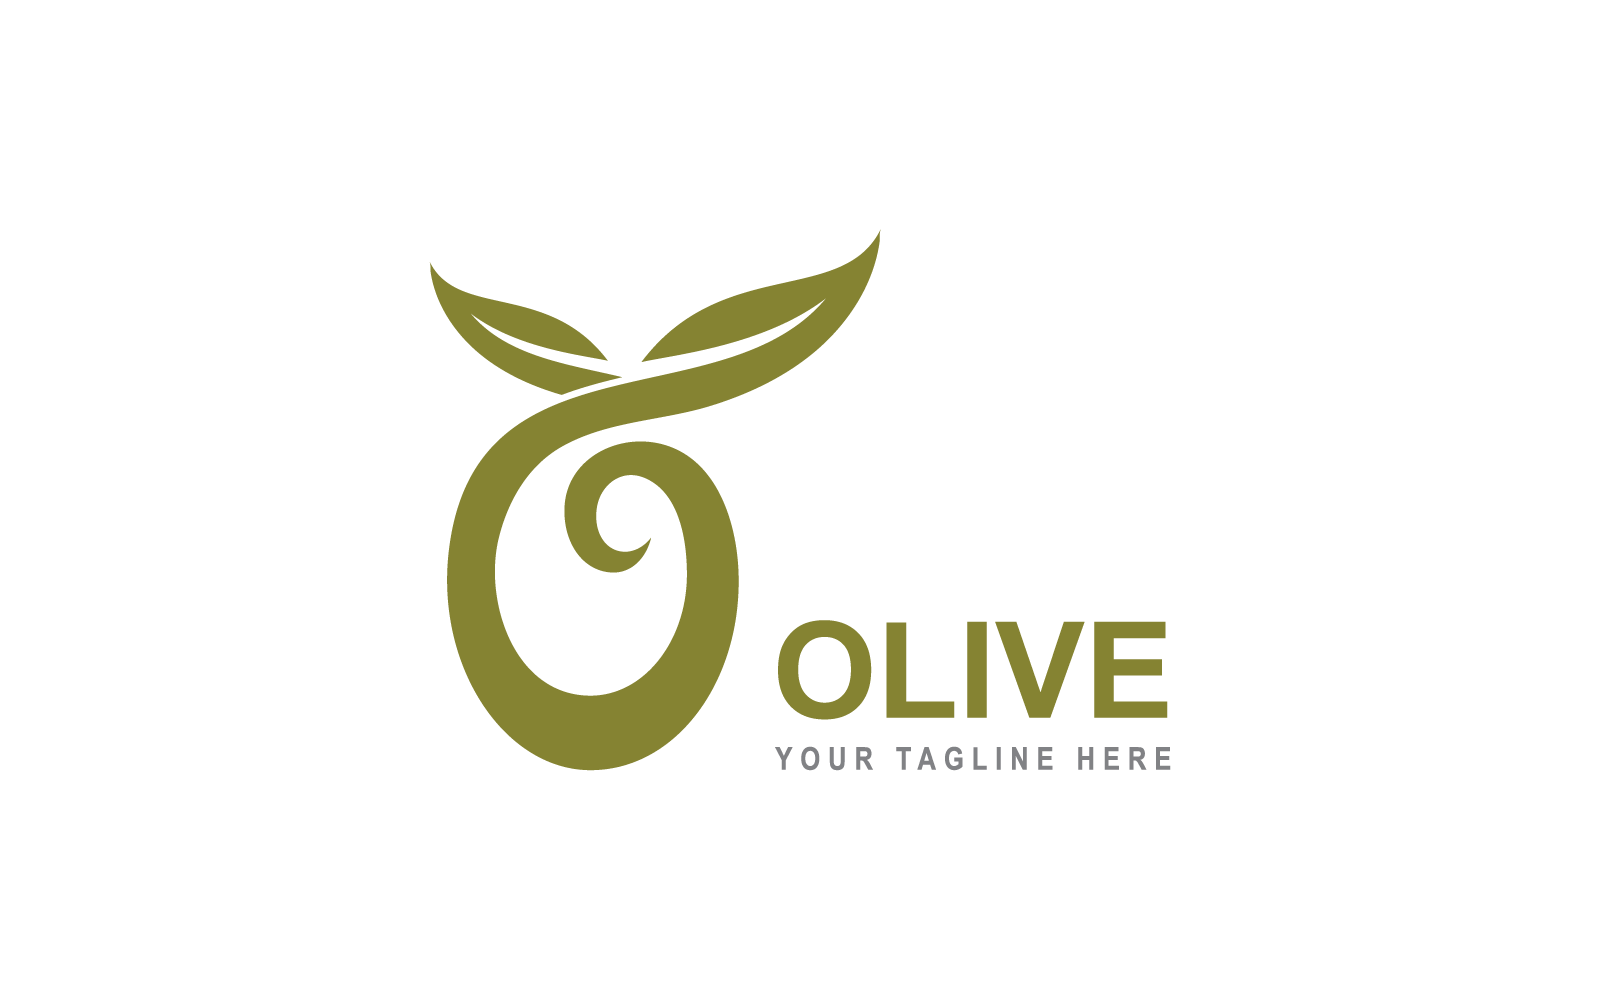 Olive logo template illustration vector flat design